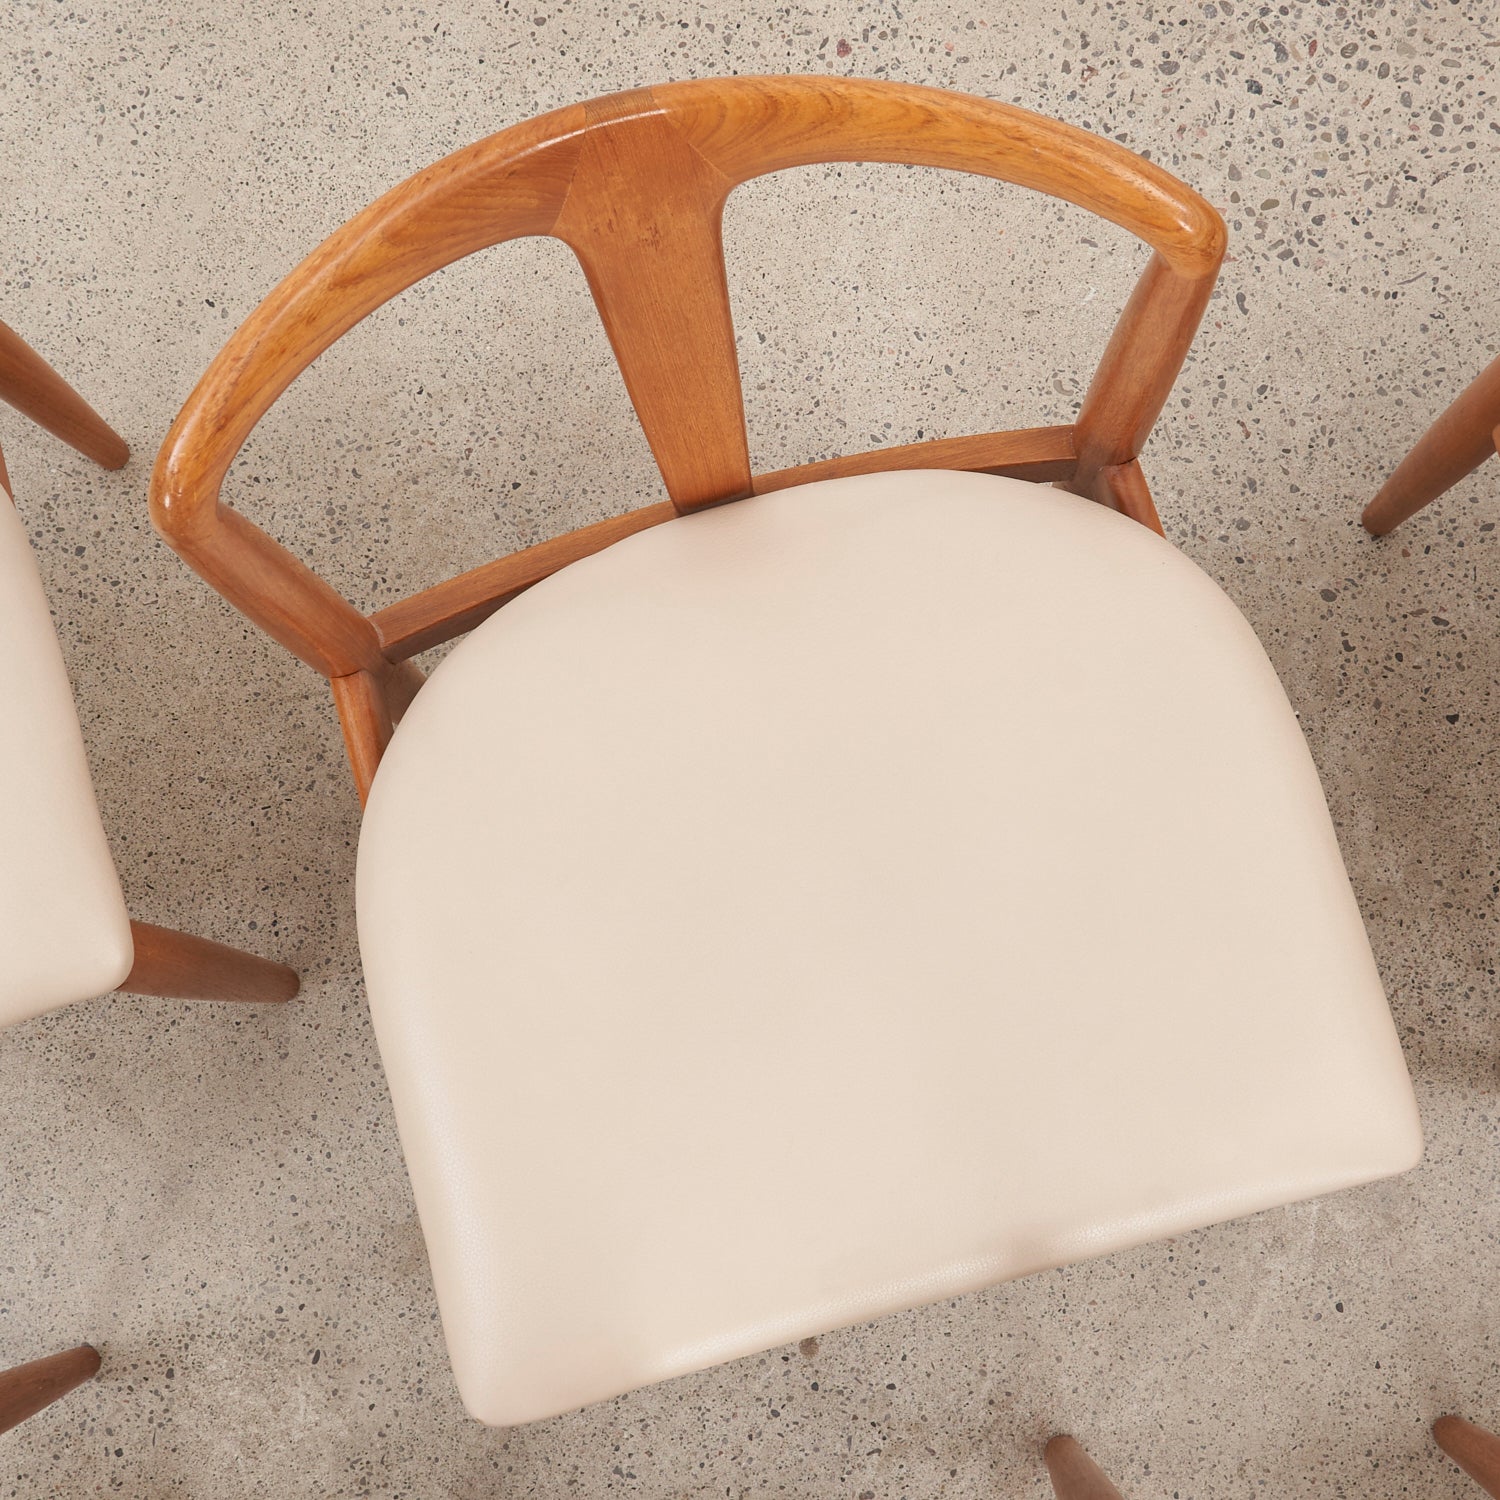 Set of 6 Teak & Leather 'Juliane' Chairs by Johannes Andersen for Uldum Møbelfabrik, Denmark